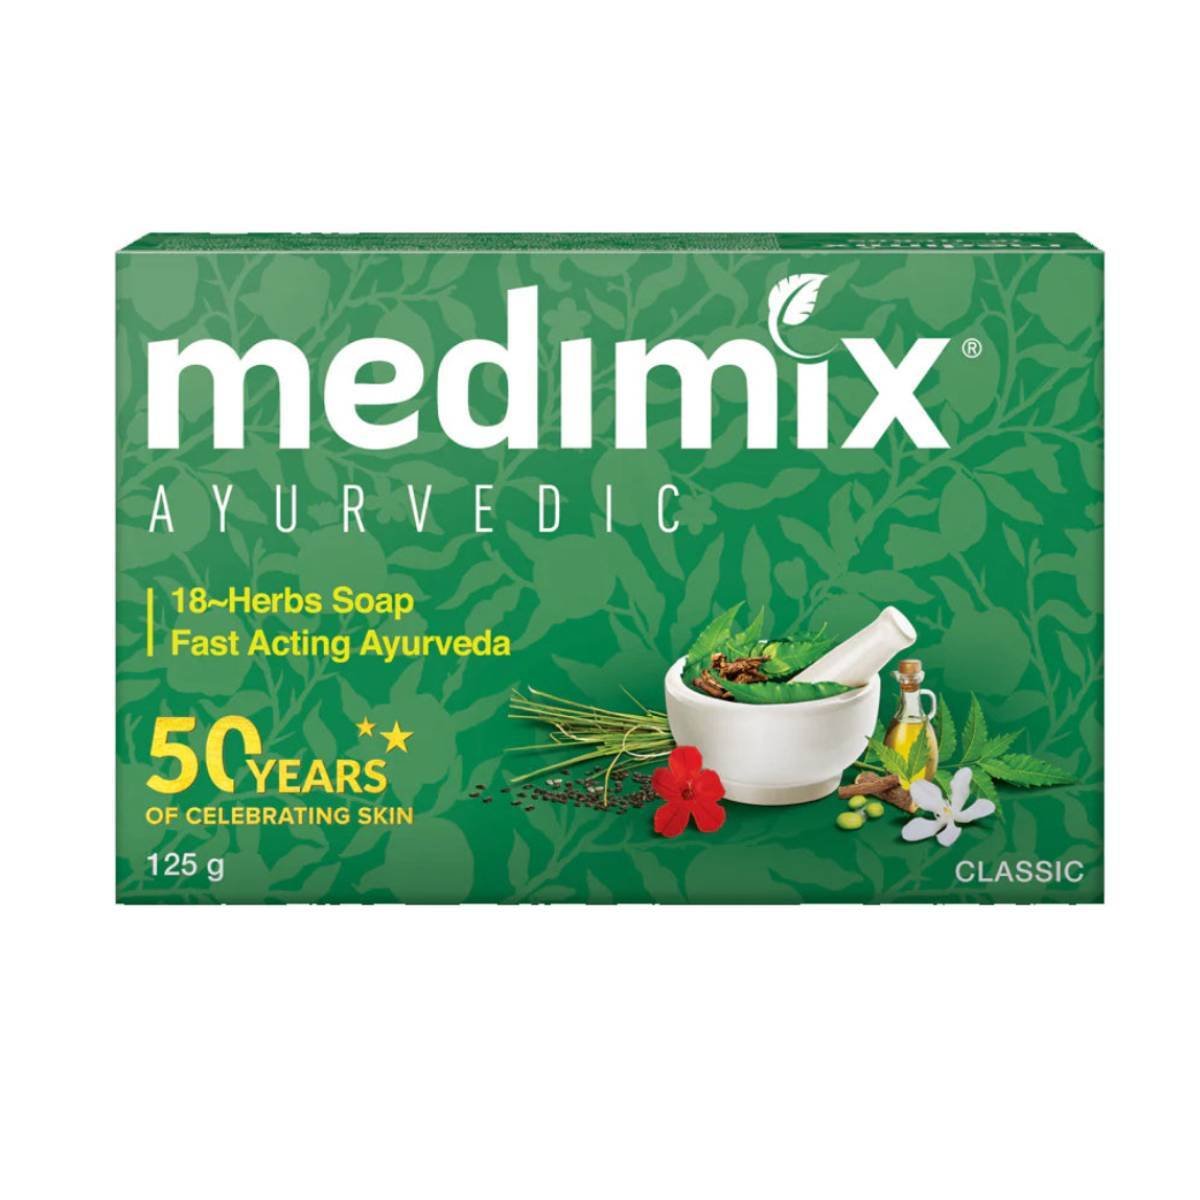 ميديميكس صابون أيورفيدا كلاسيكي يحتوي على 18 أعشاب 125 جم 4+1